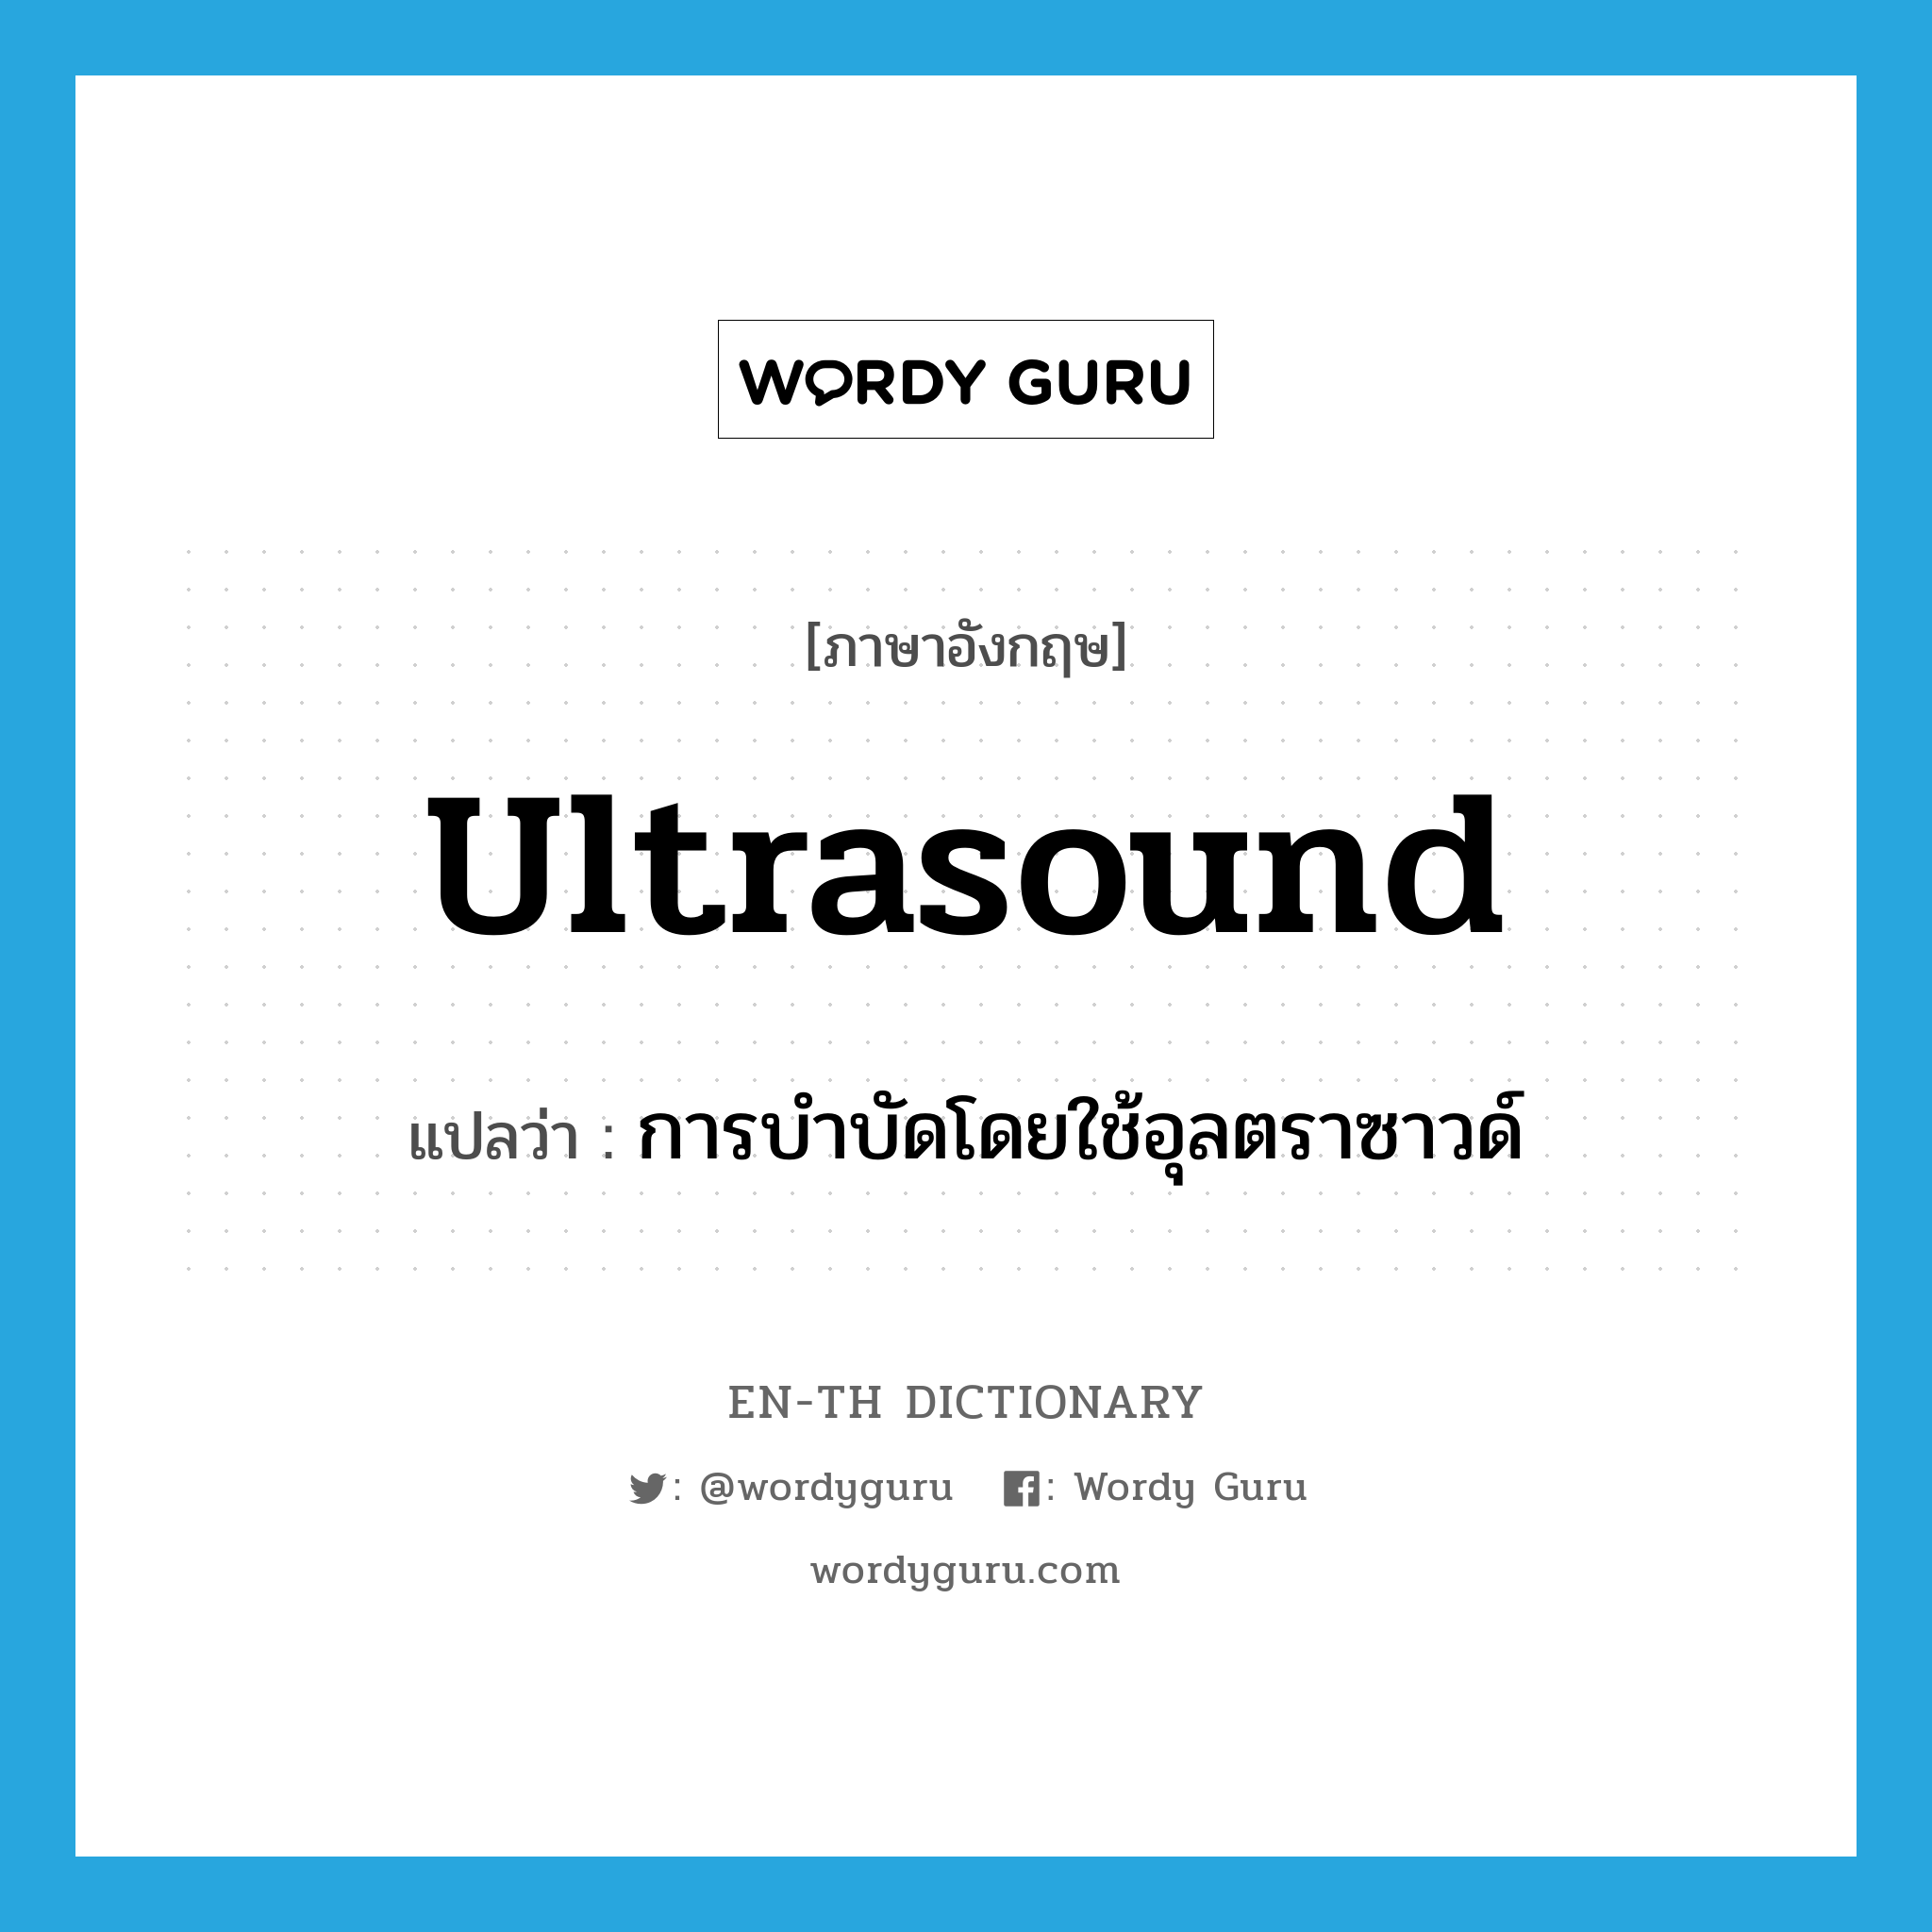 การบำบัดโดยใช้อุลตราซาวด์ ภาษาอังกฤษ?, คำศัพท์ภาษาอังกฤษ การบำบัดโดยใช้อุลตราซาวด์ แปลว่า ultrasound ประเภท N หมวด N